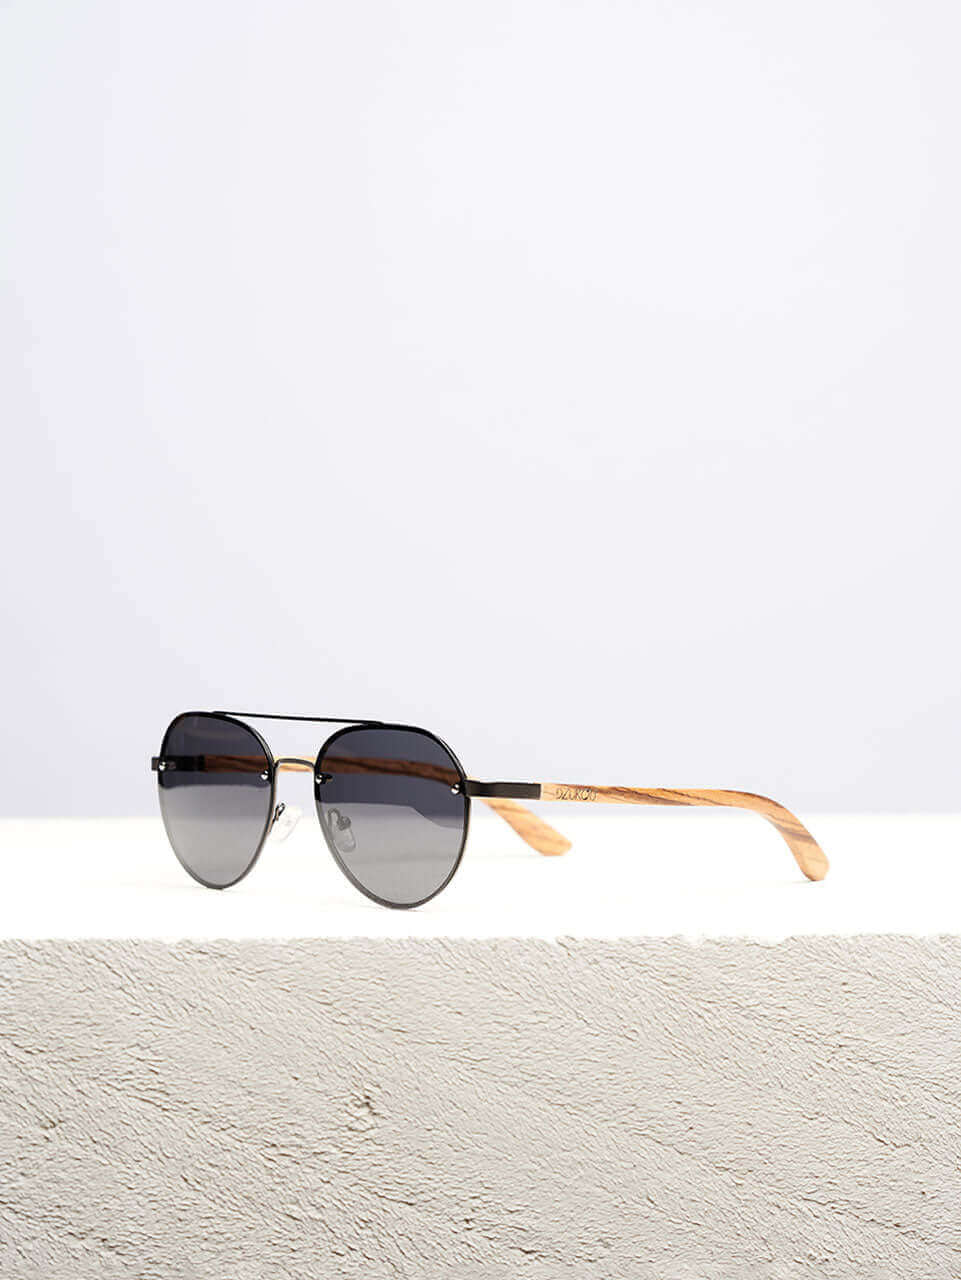 Sierra - Holzsonnenbrille für Damen und Herren